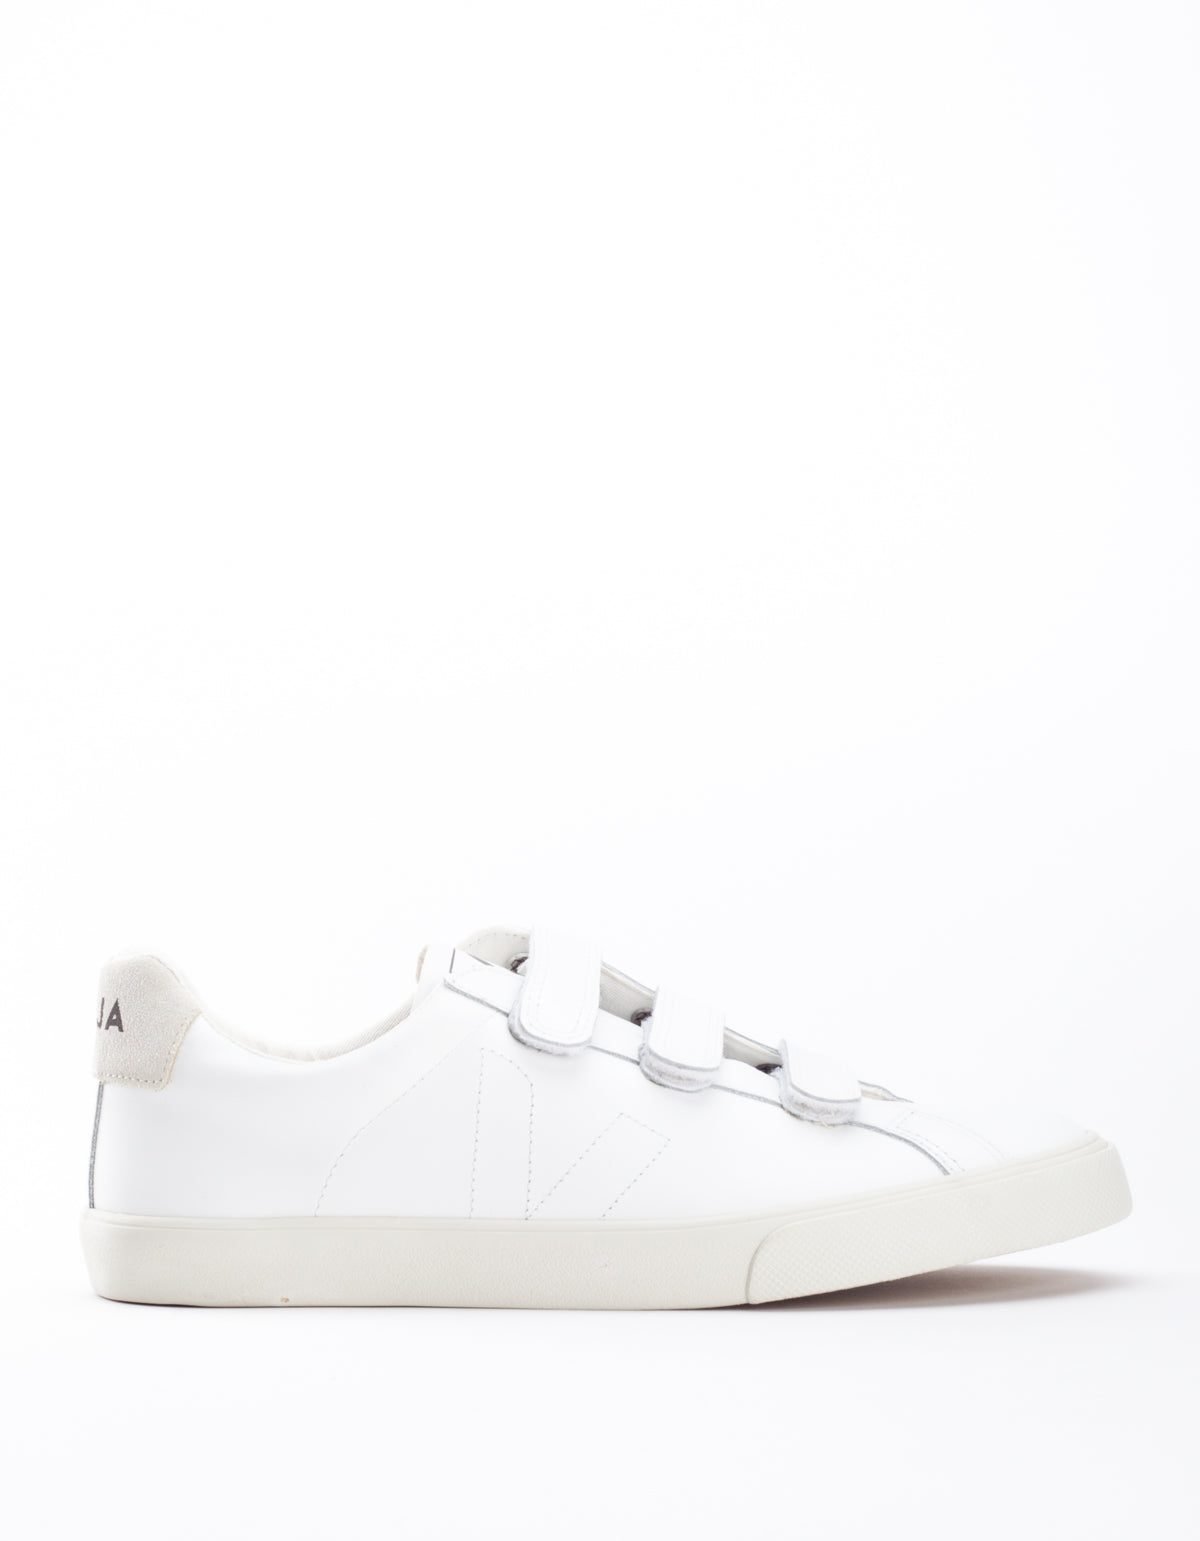 Veja Esplar 3 Locks Leather Sneaker Extra White – Still Life